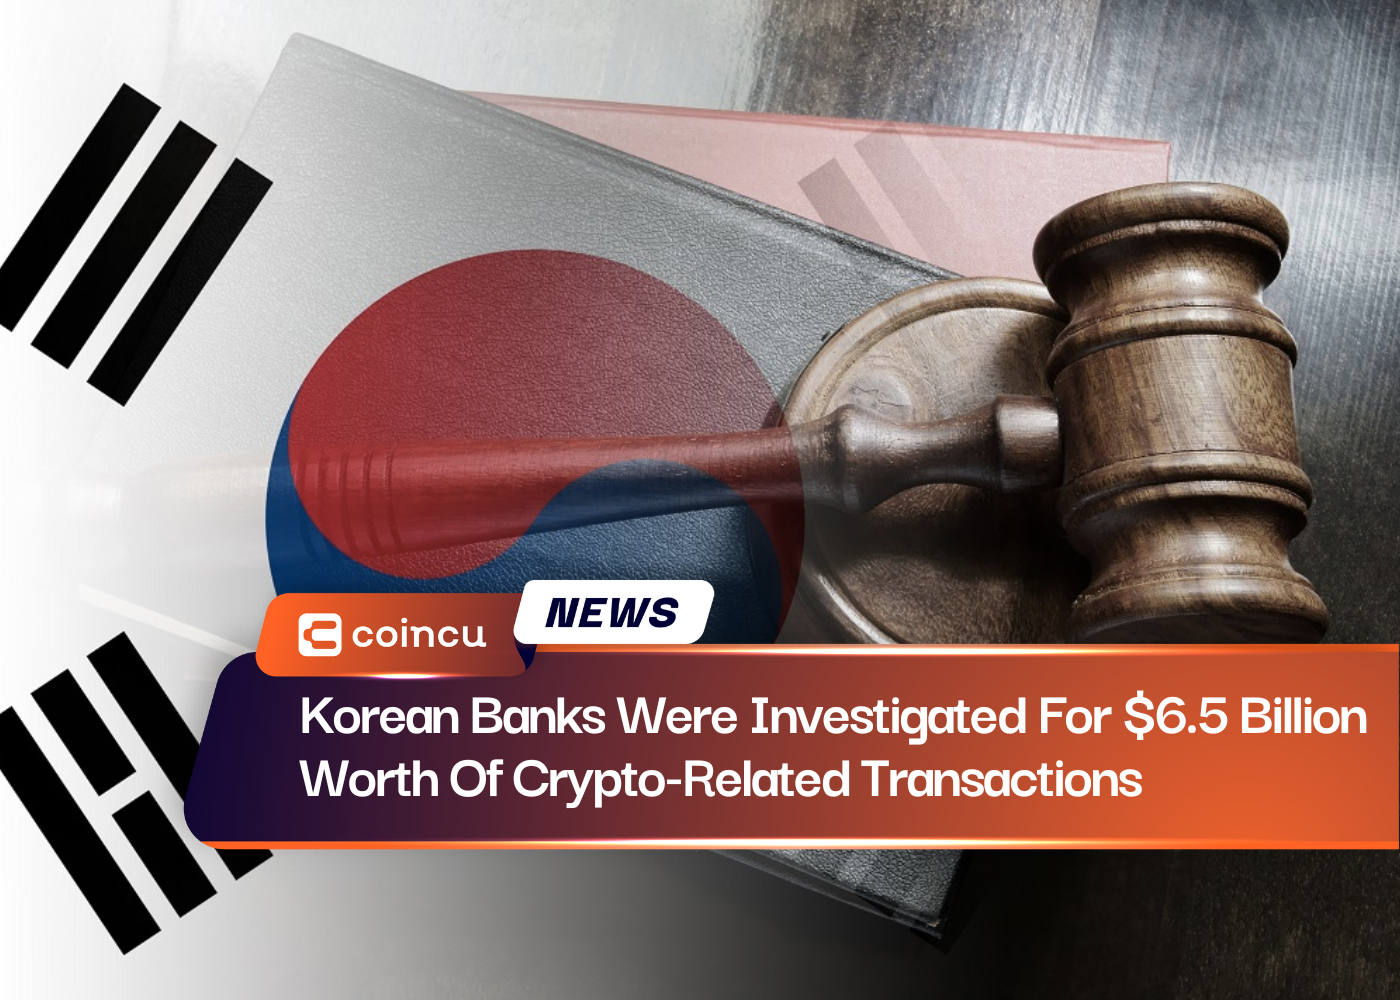 Korean Banks Were Investigated For $6.5 Billion Worth Of Crypto-Related Transactions